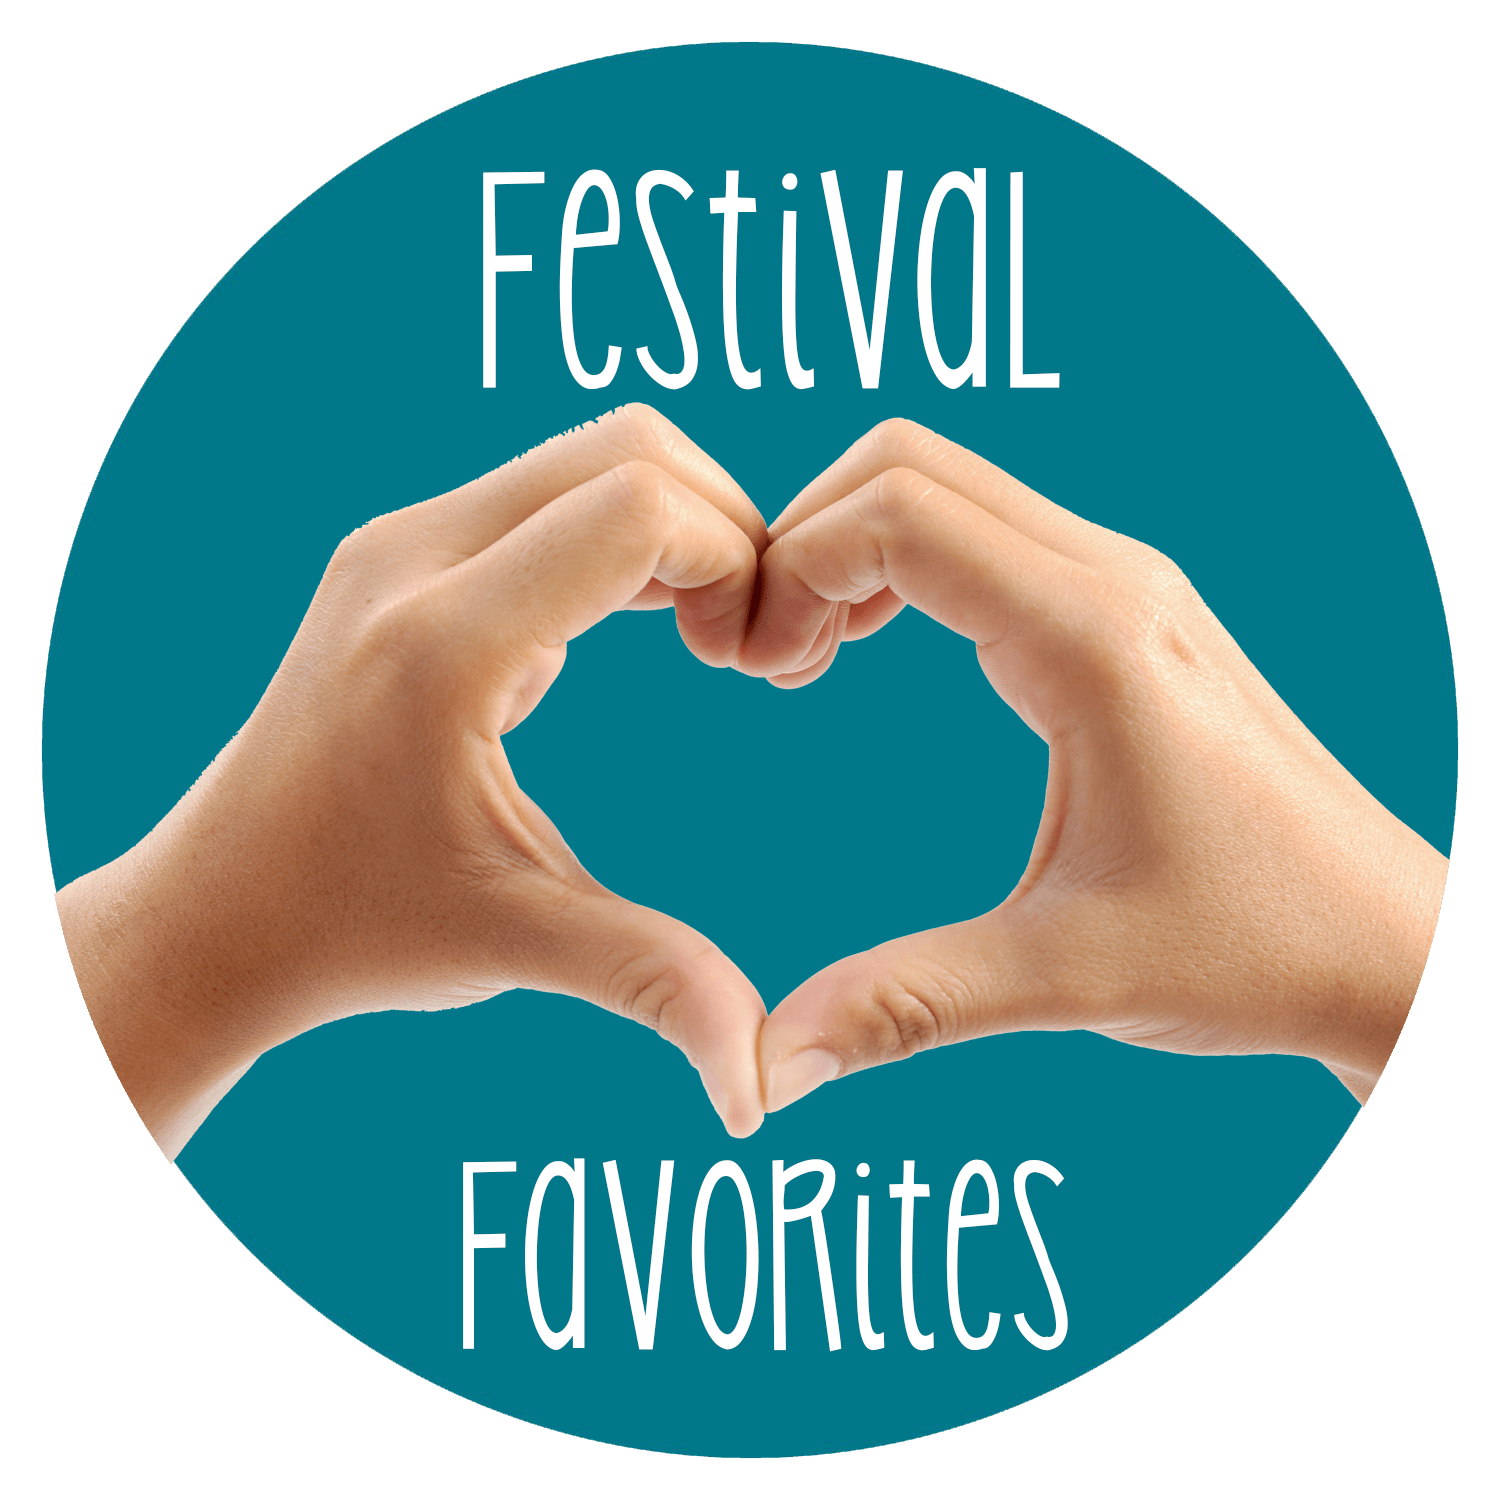 Festival Favorites Button.png